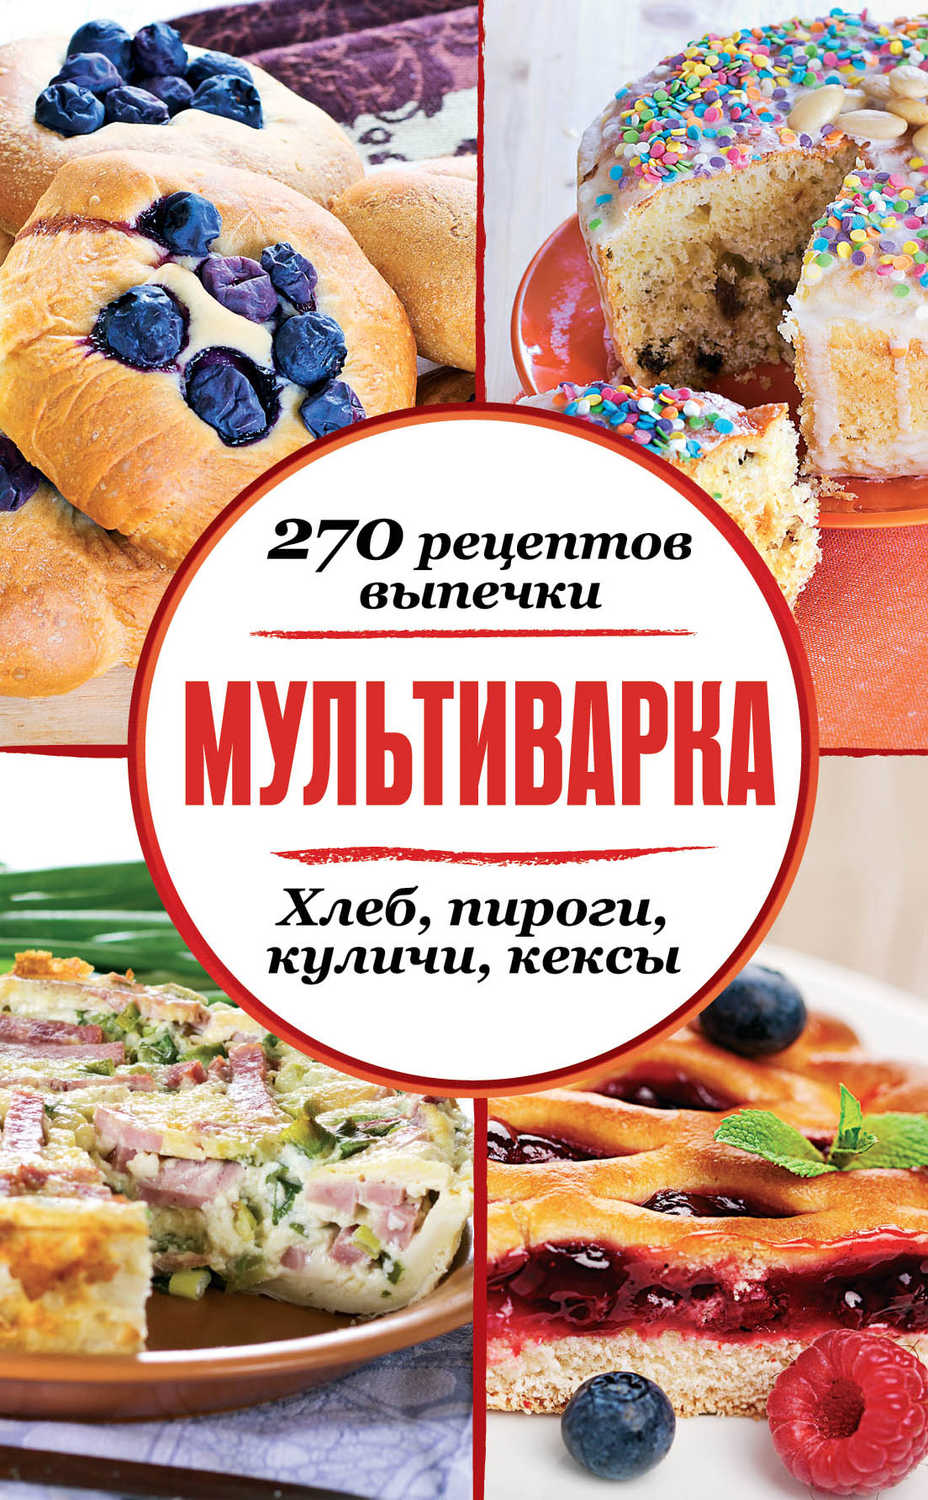 Сборник рецептов - «Мультиварка. 270 рецептов выпечки: Хлеб, пироги, куличи, кексы»